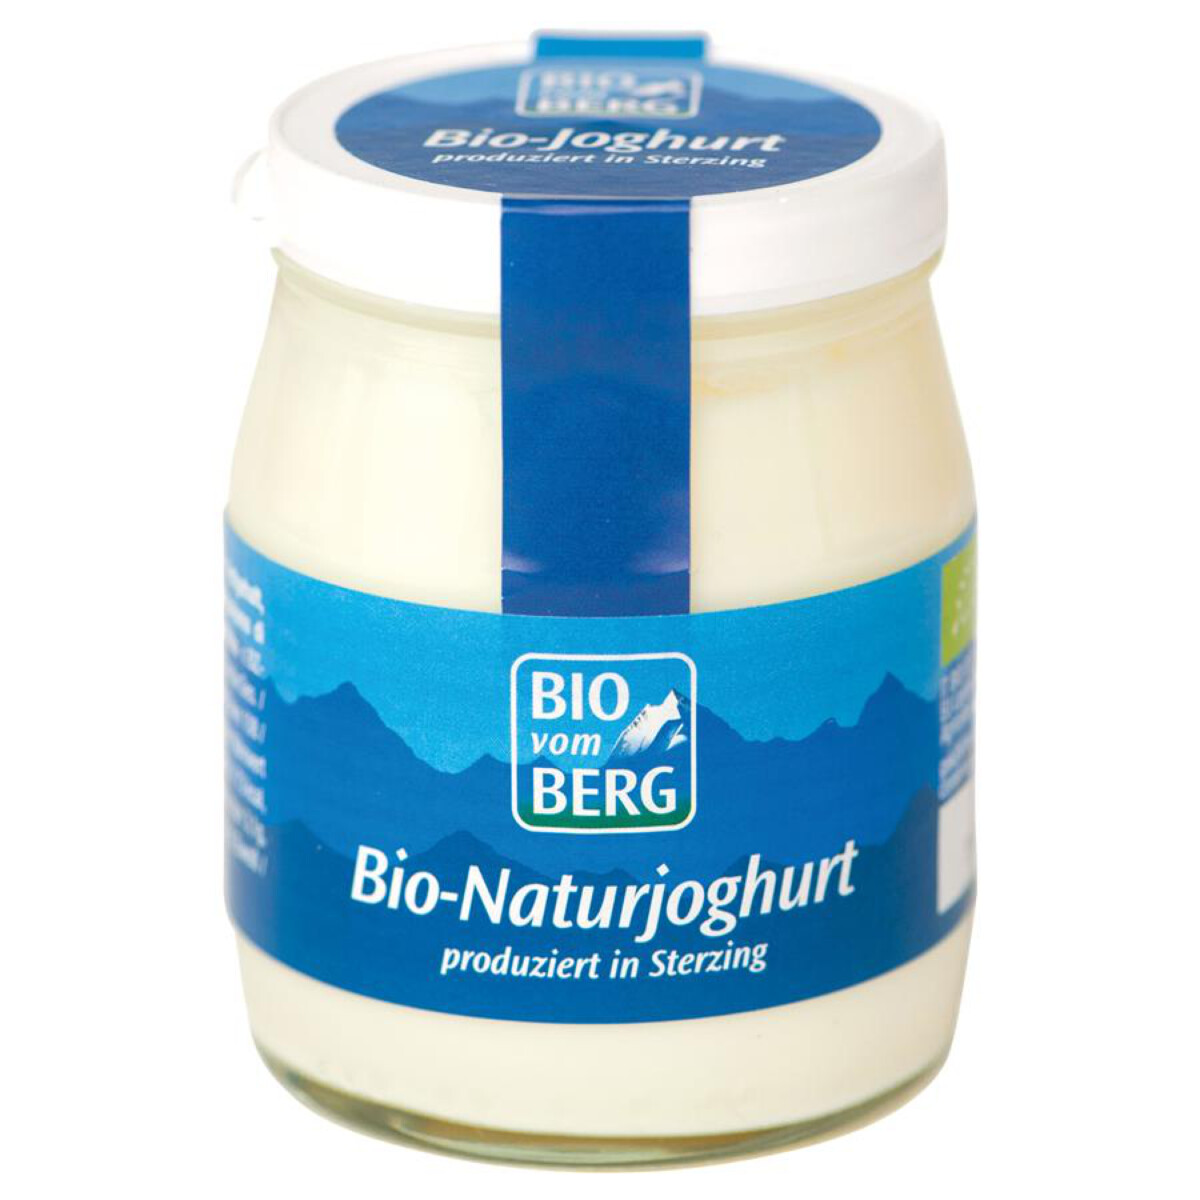 BIO Prírodný jogurt v skle, 150g